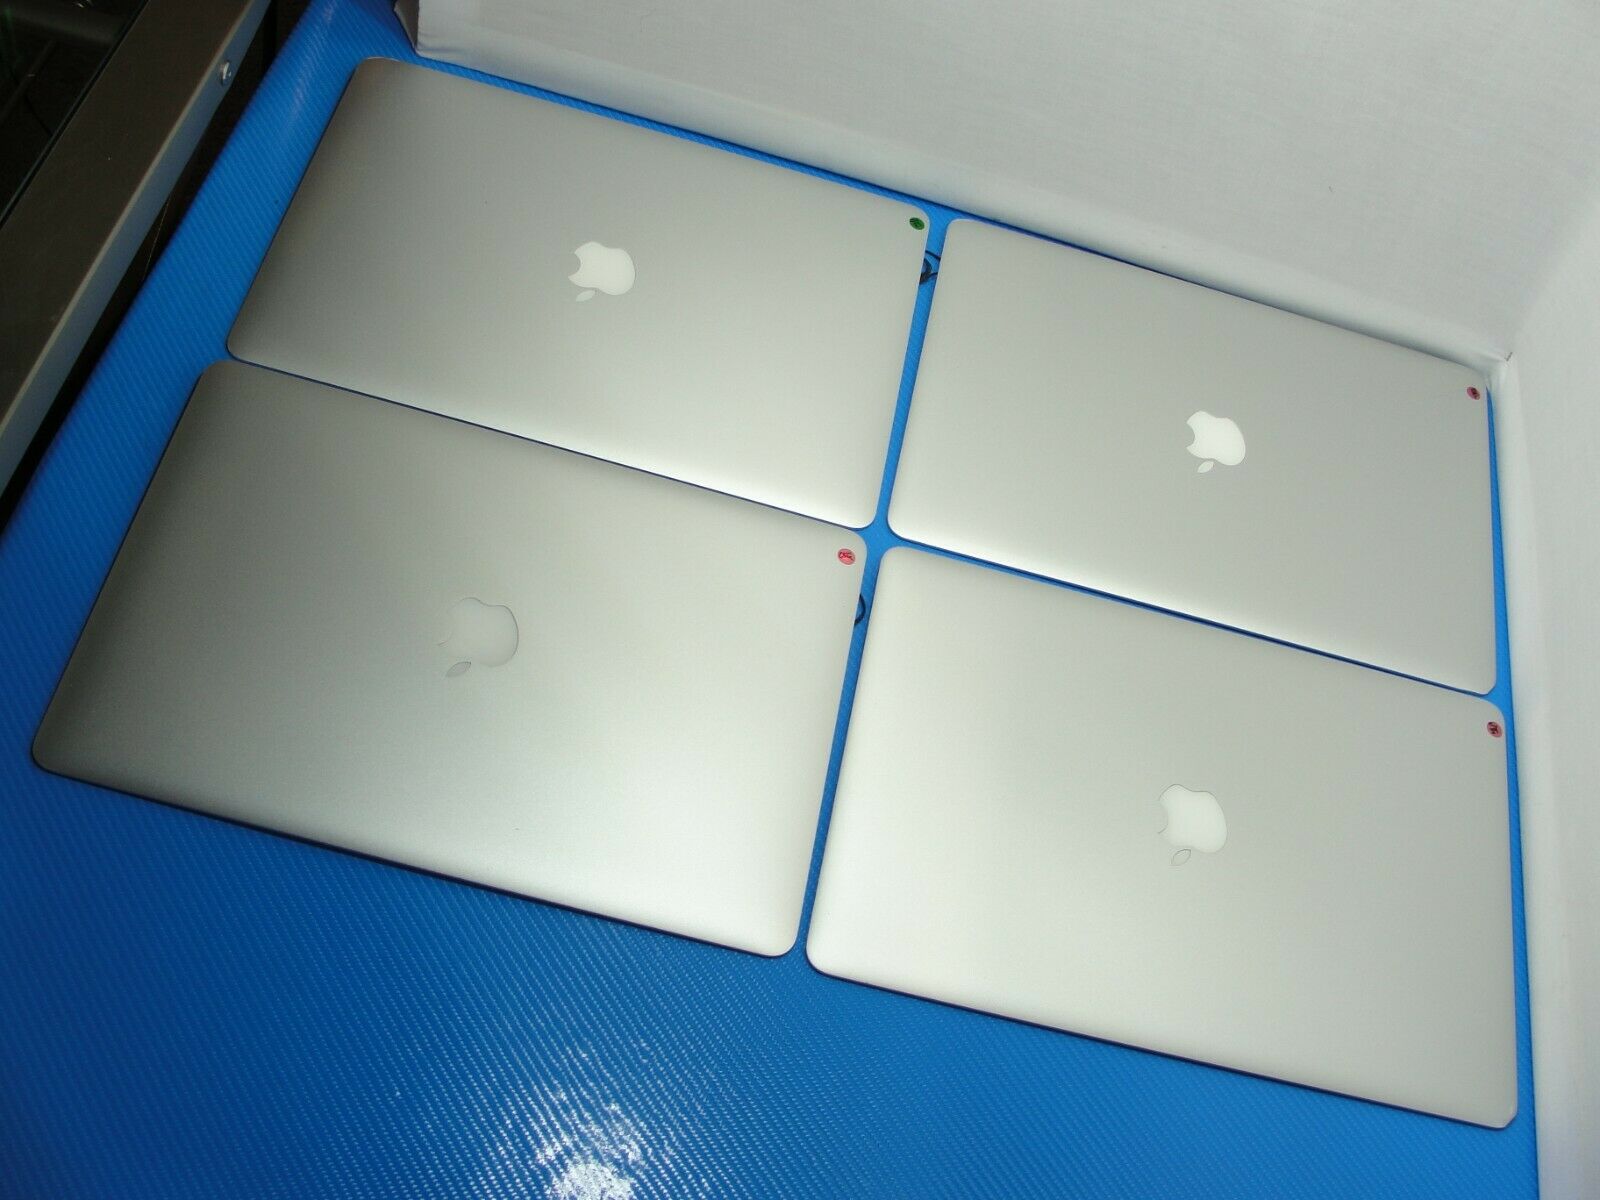 Apple MacBook Pro A1398 15.4